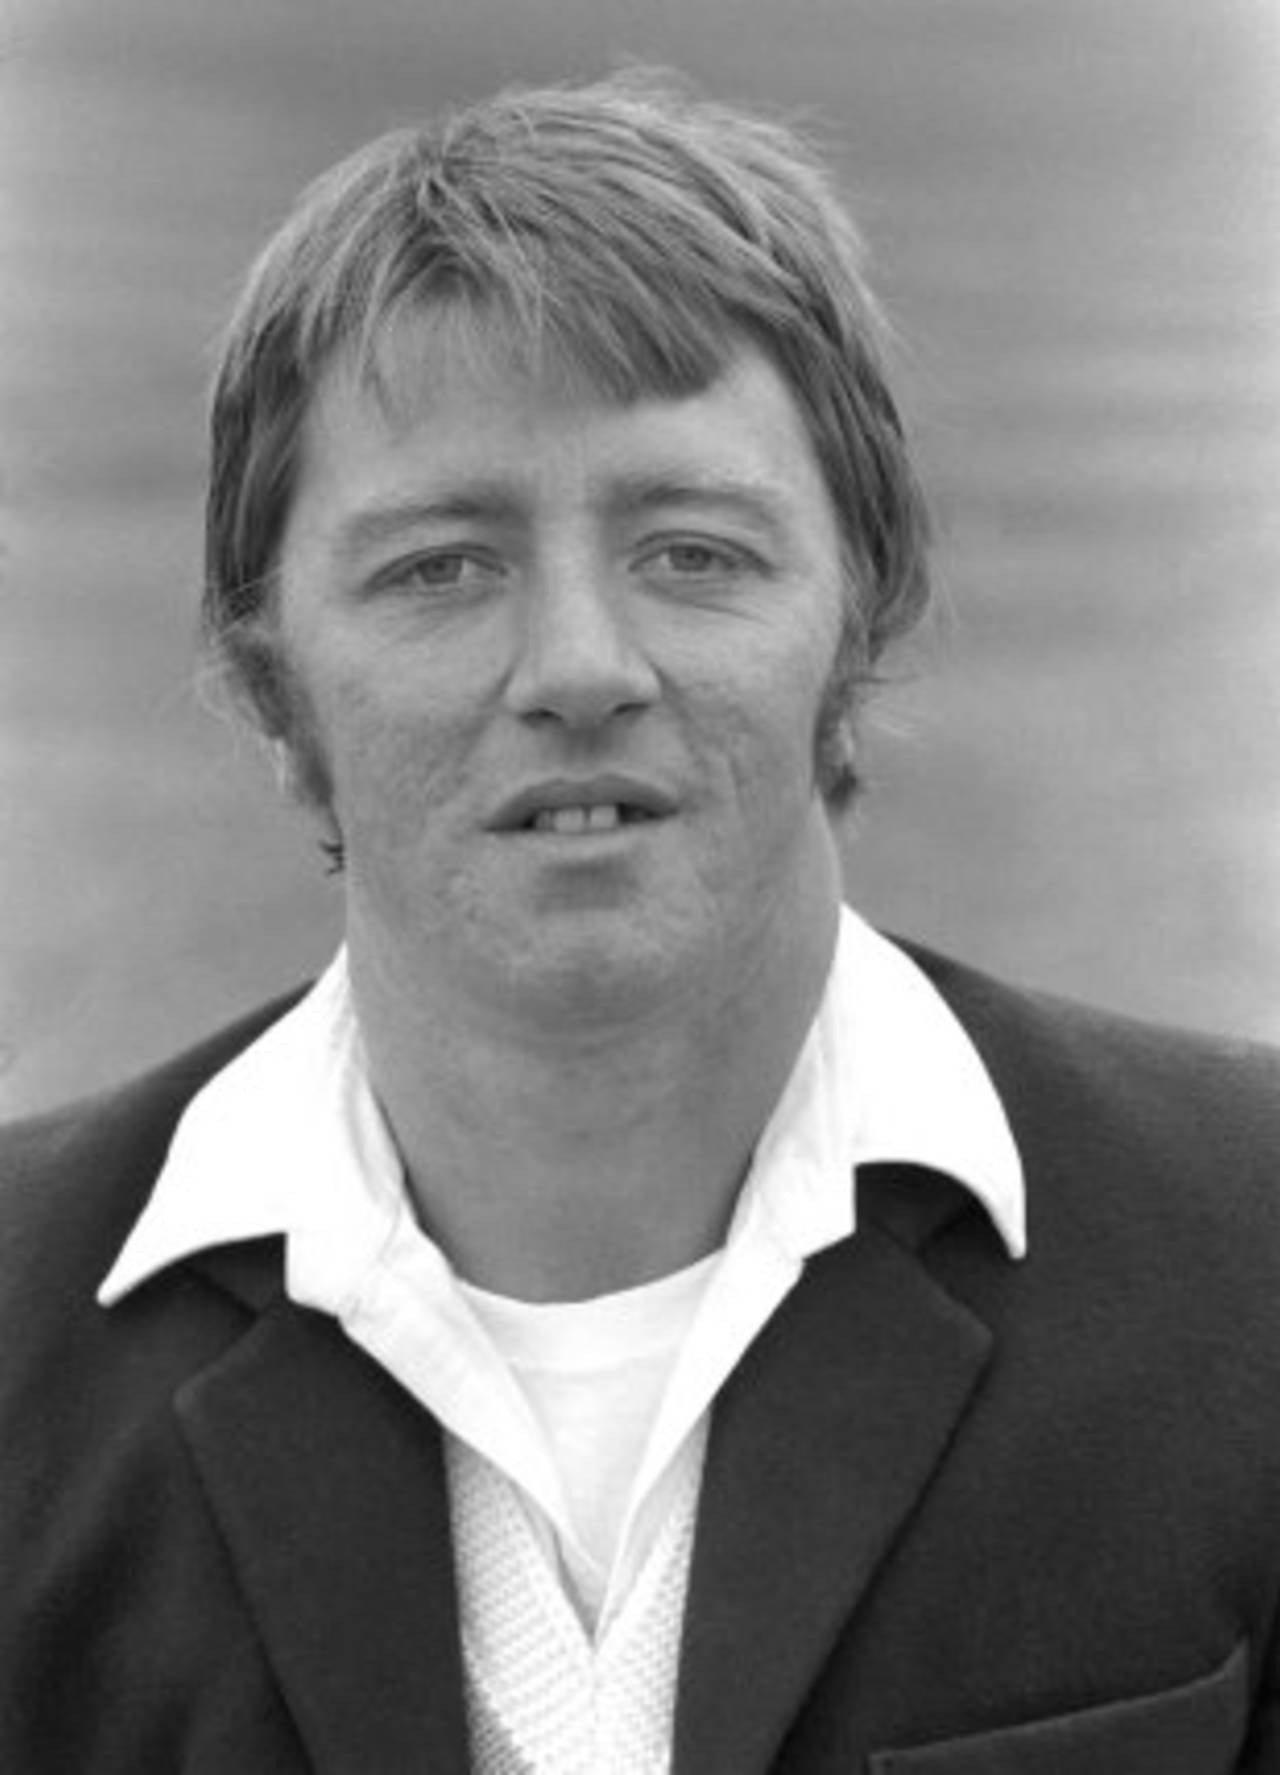 Graham Stevenson in 1979